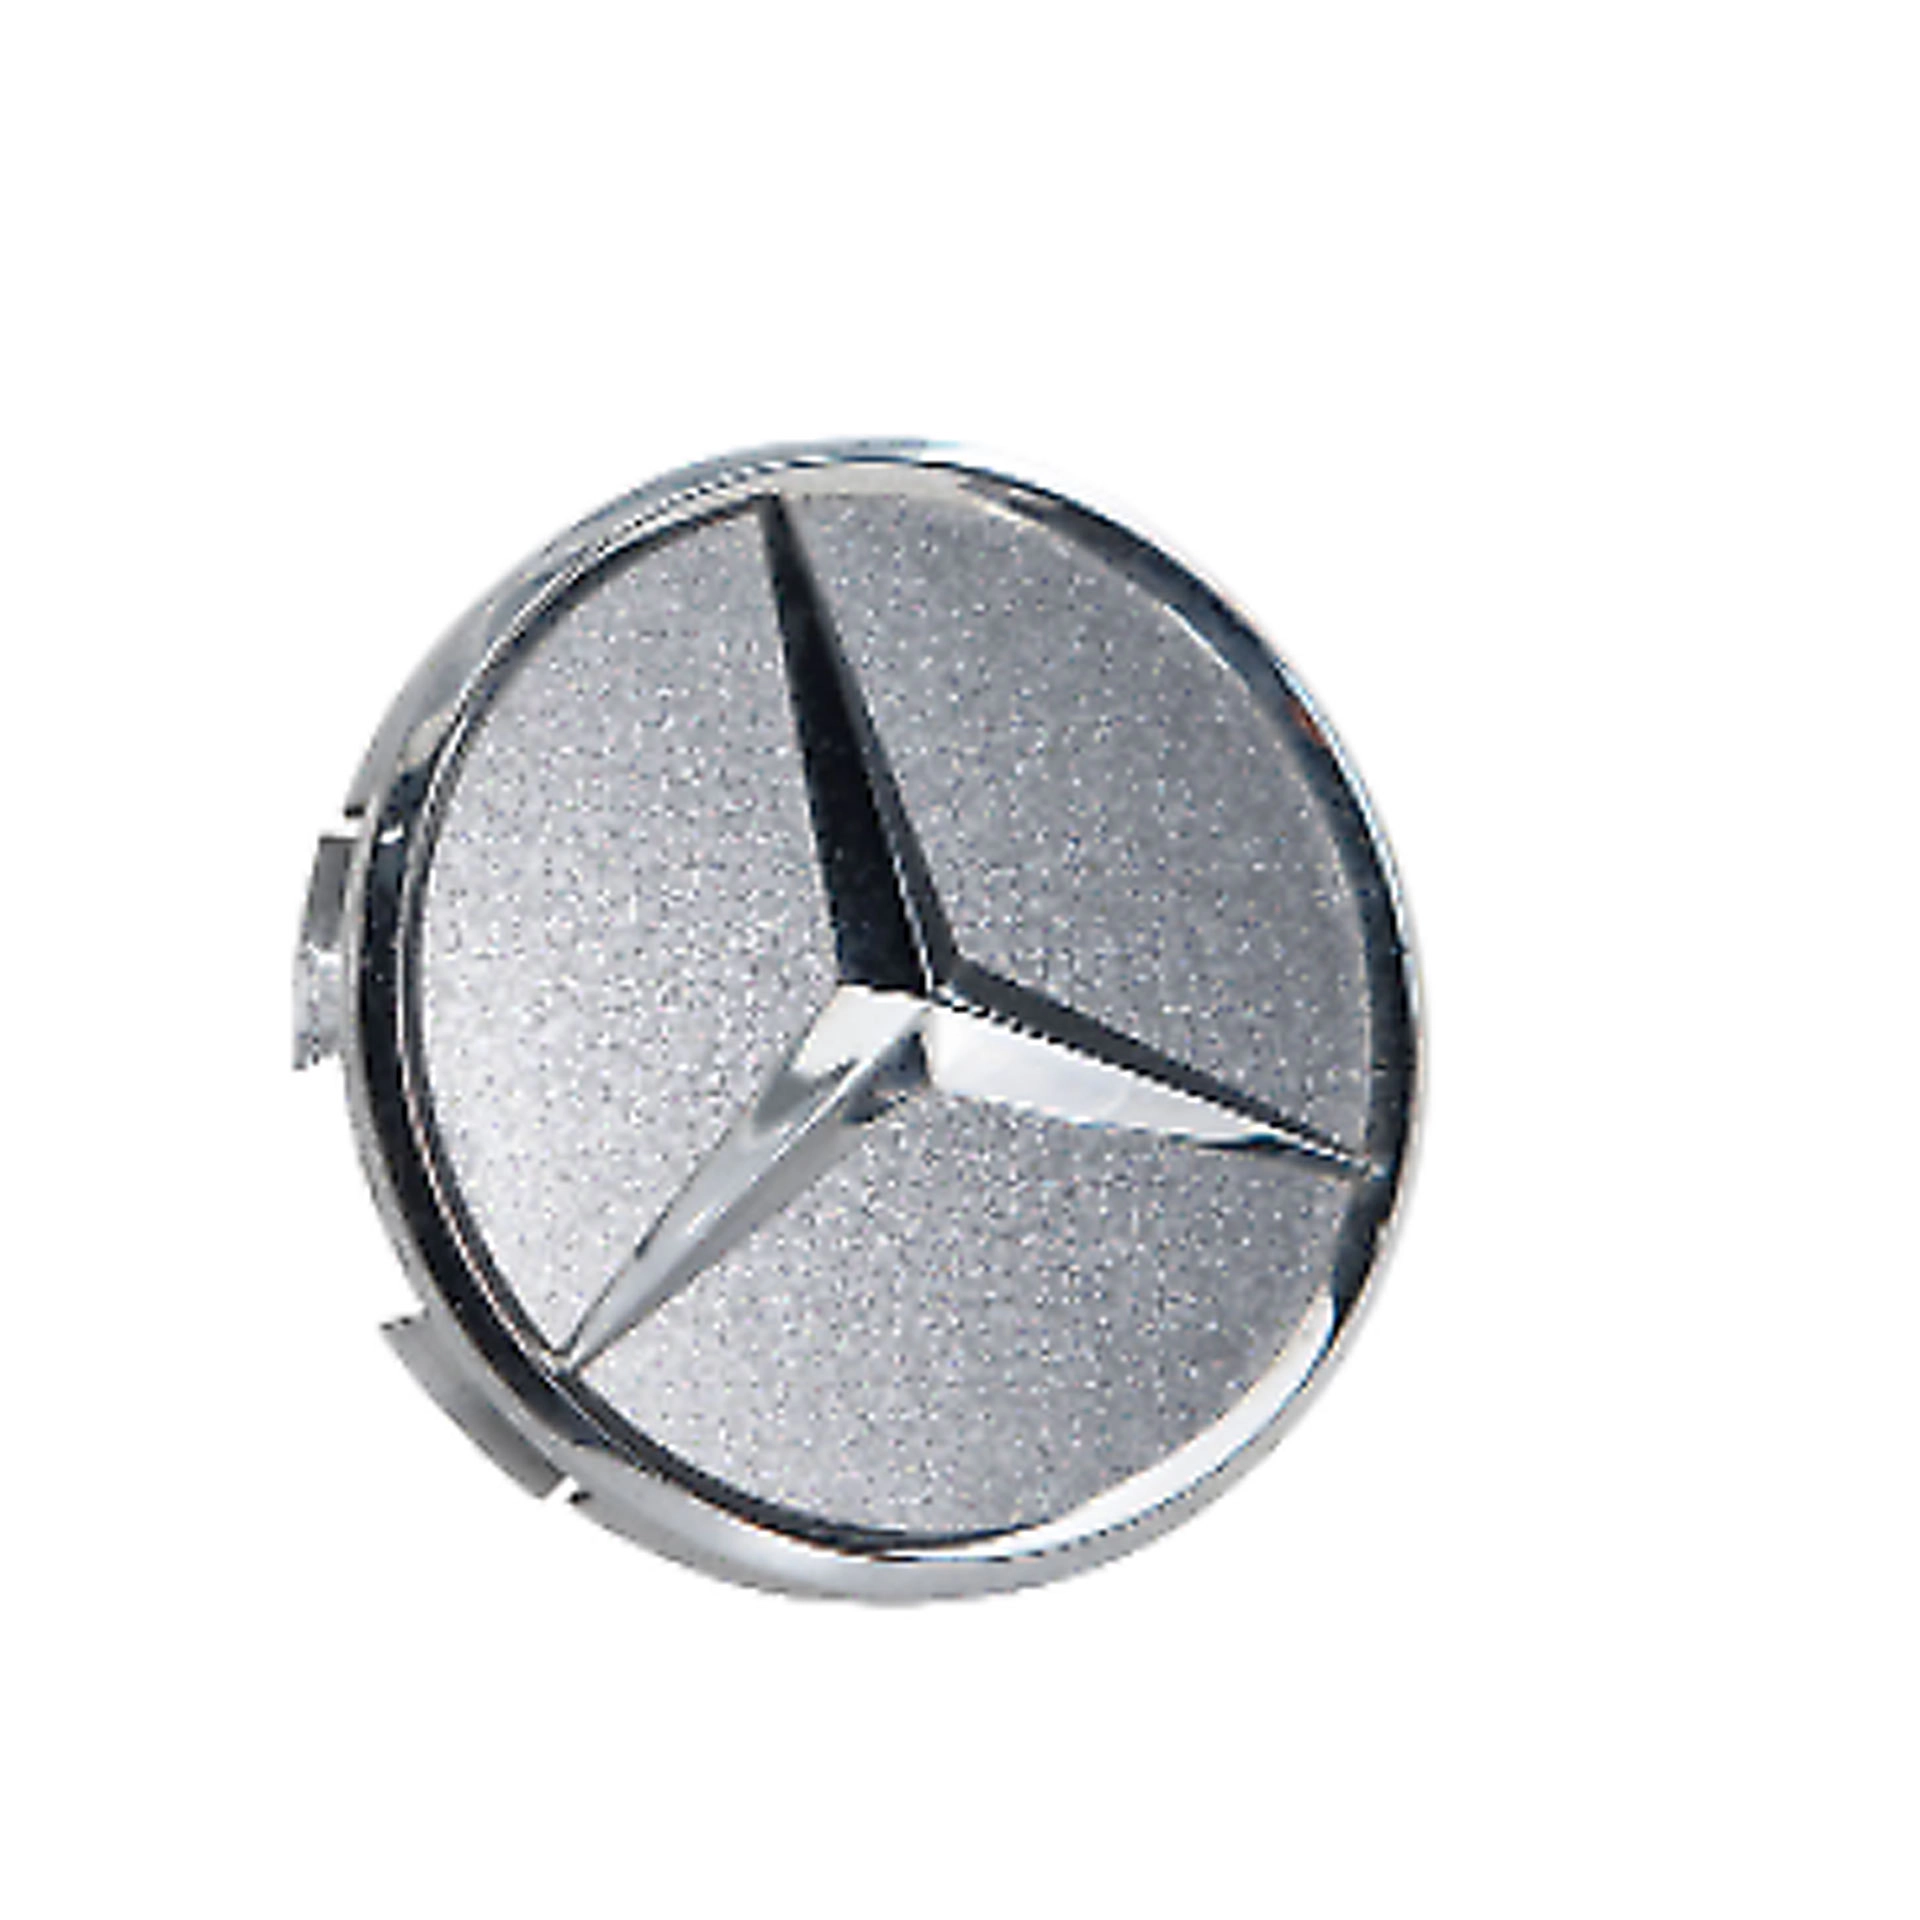 Mercedes-Benz Citan 415 Radnabenabdeckung Stern silber A4154002800